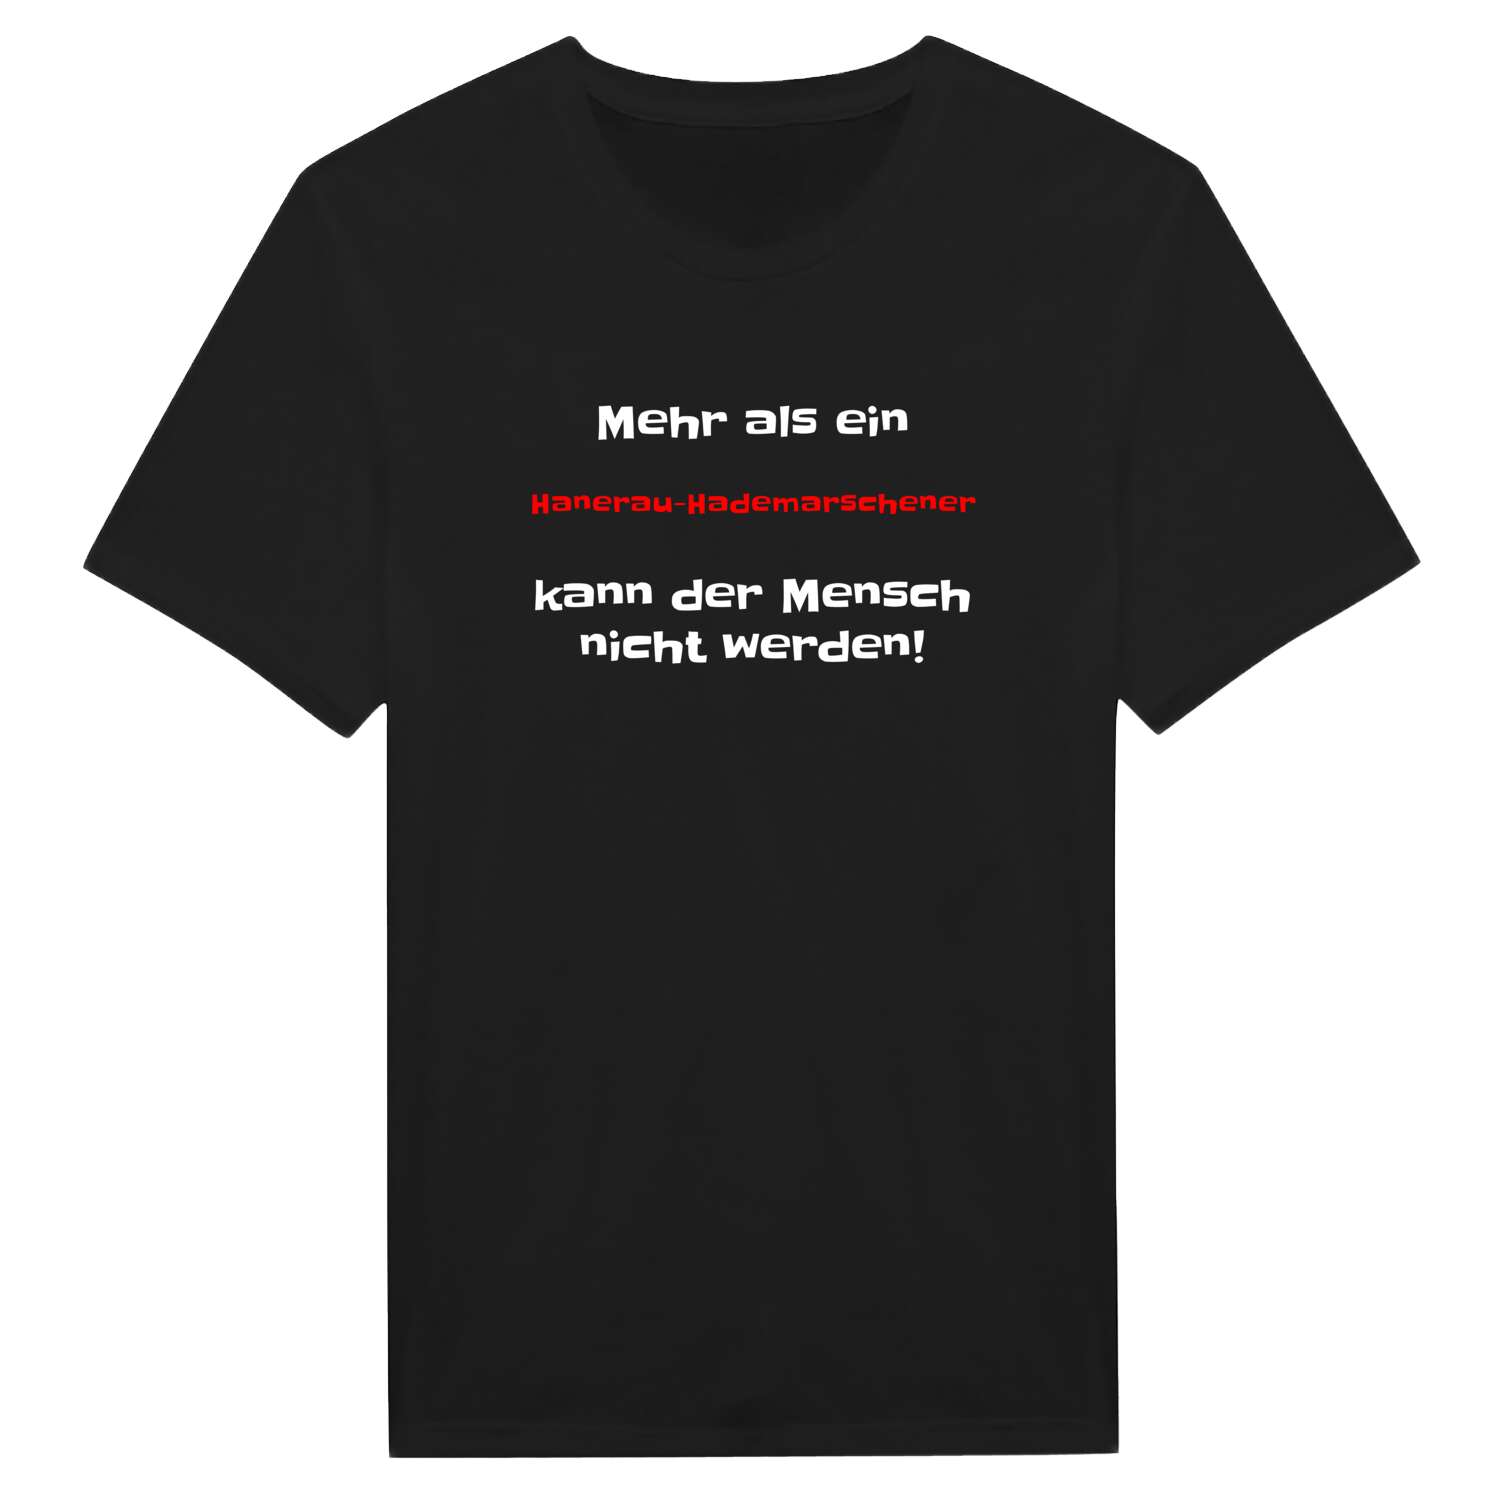 Hanerau-Hademarschen T-Shirt »Mehr als ein«